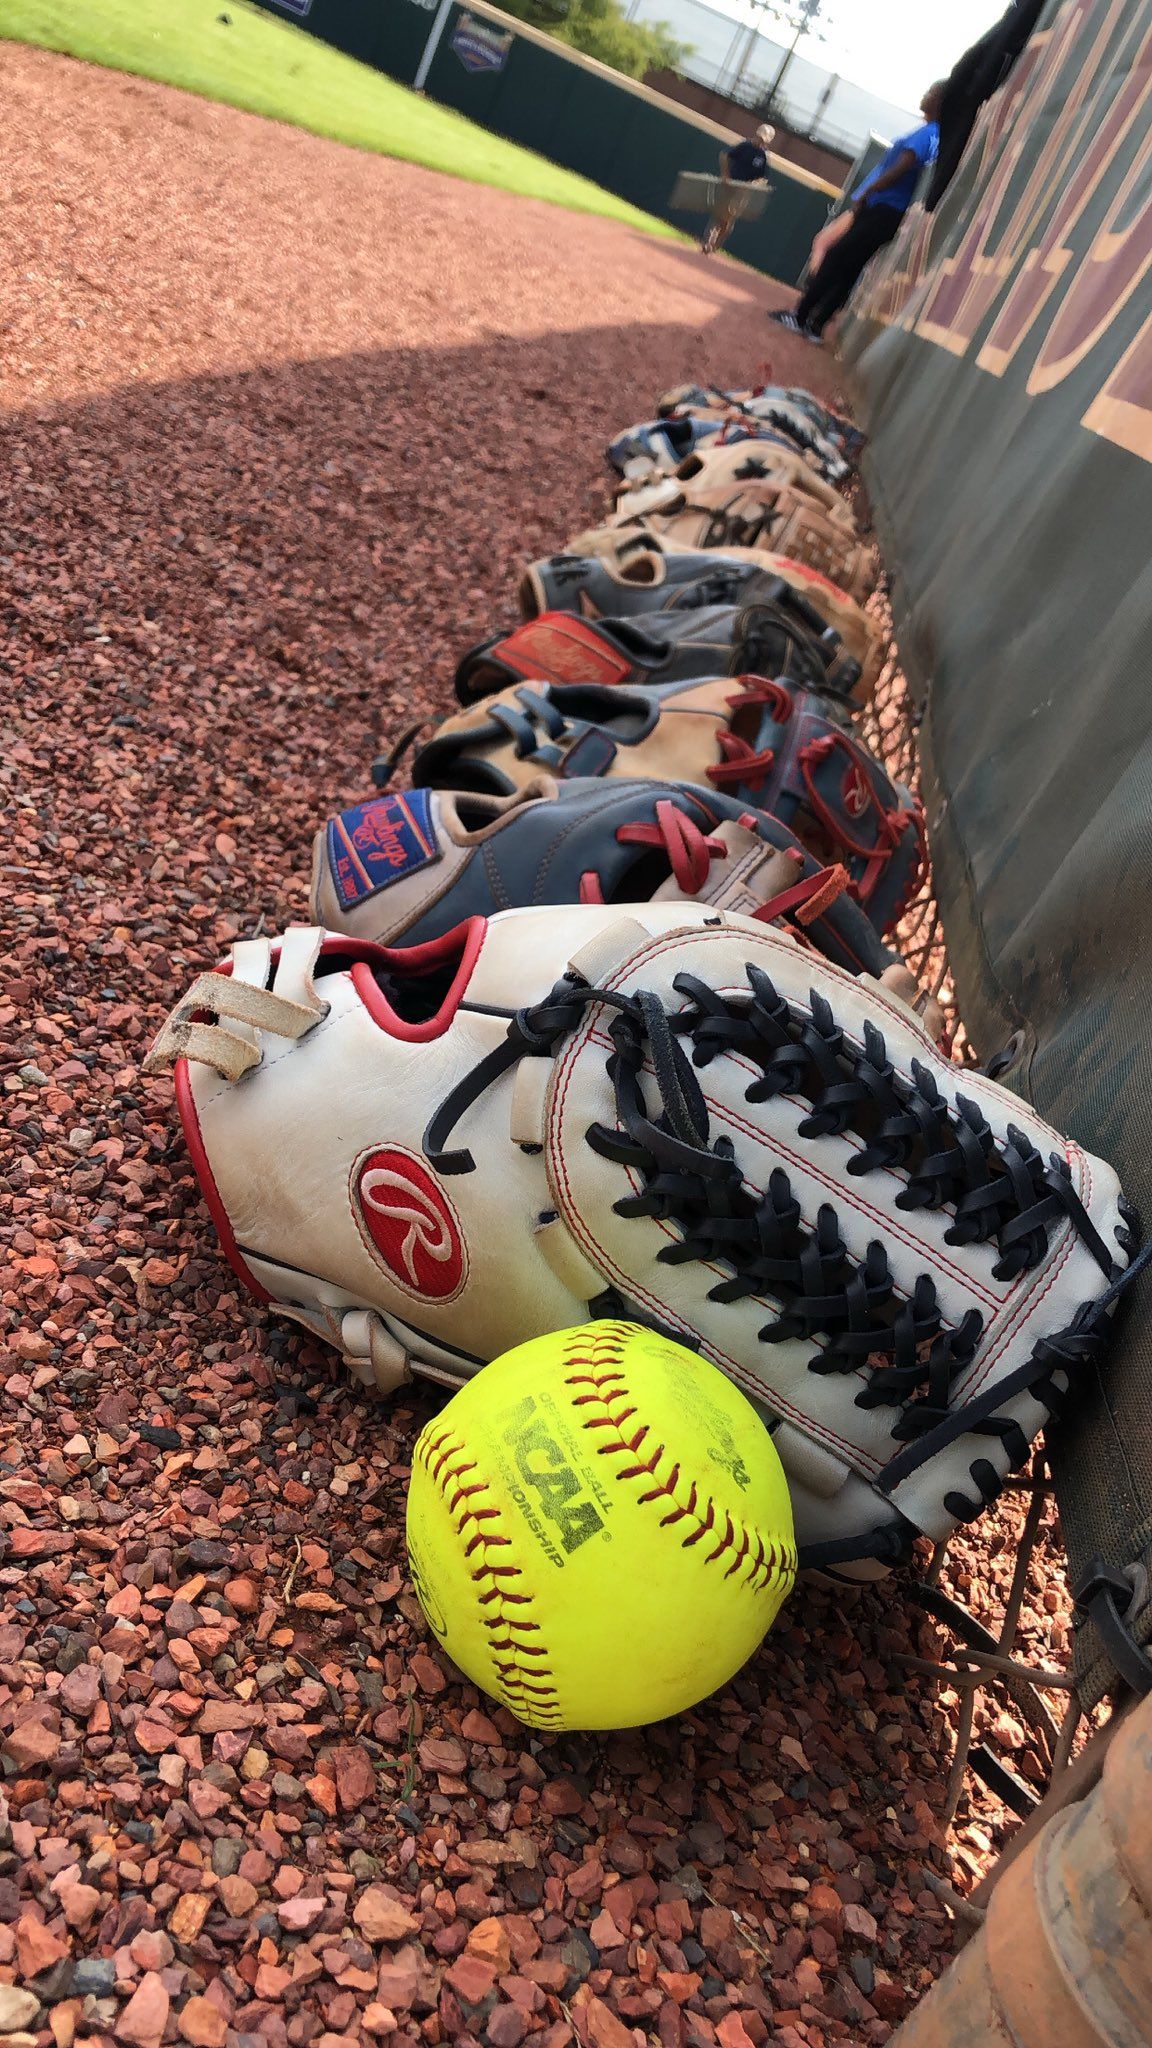 A baseball glove and ball on the ground - Softball